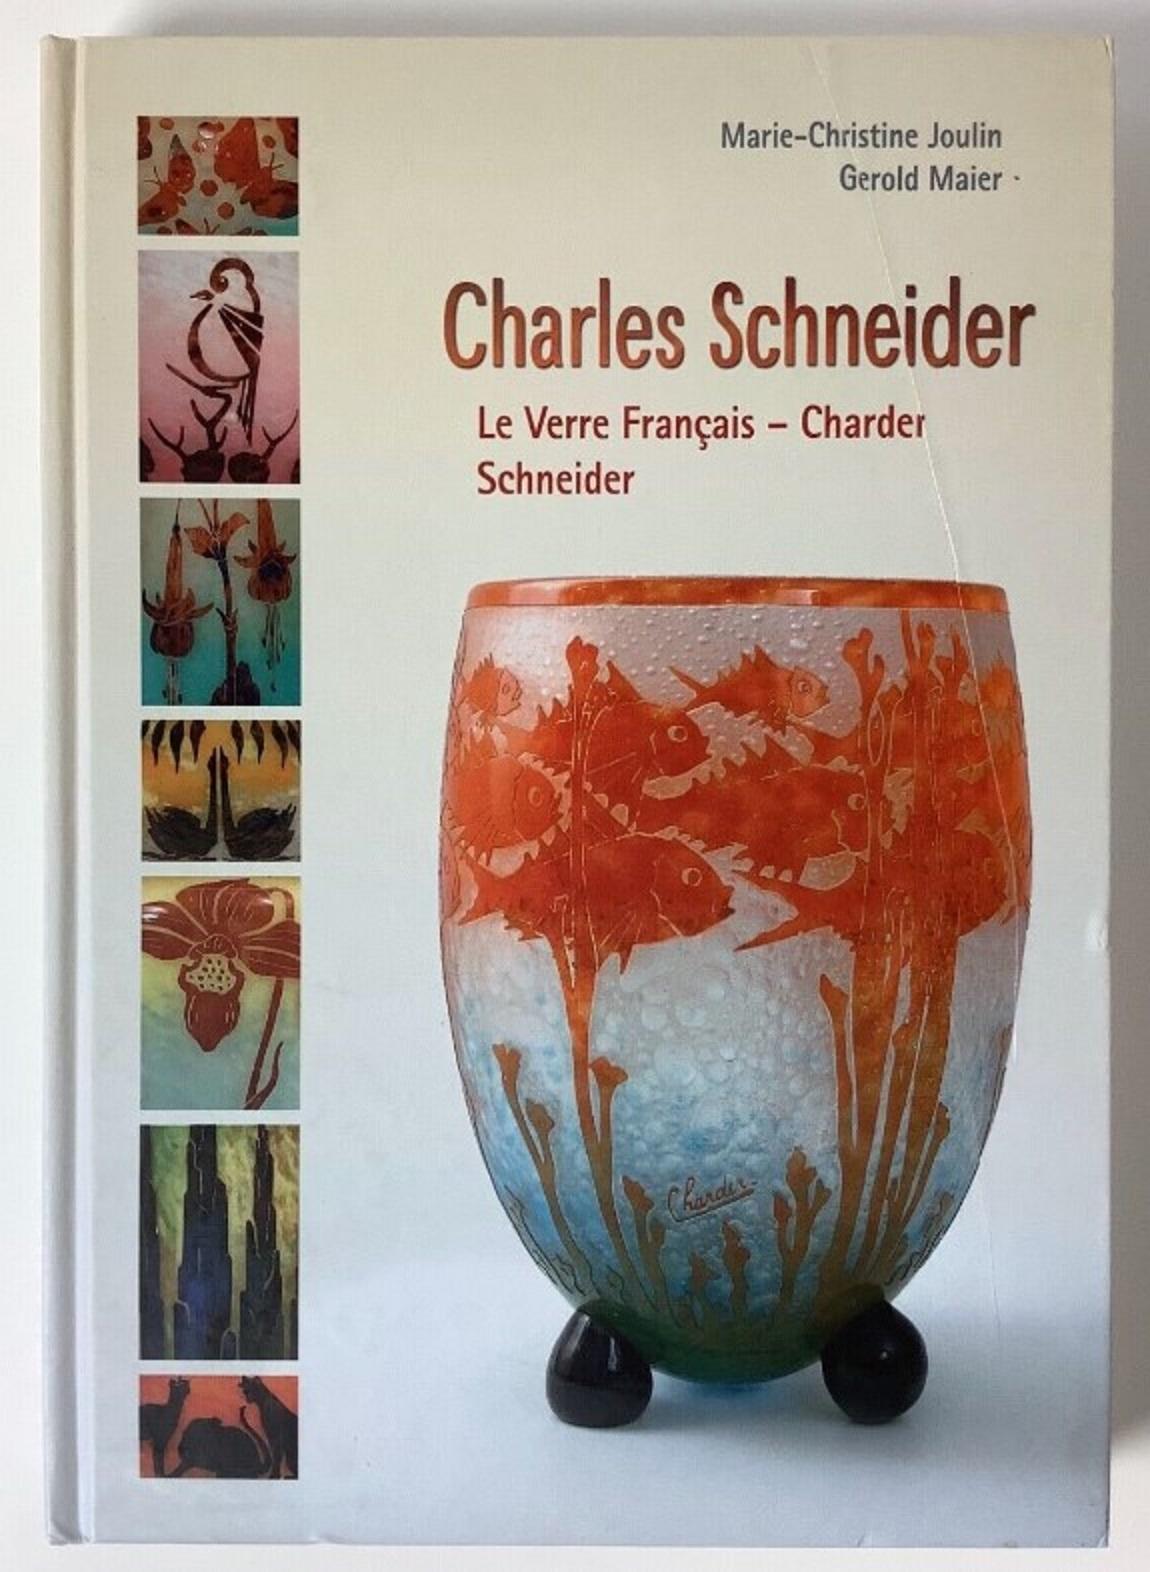 Vase mit Eisenfuß und Applikationen
Zeichen: Schneider 
Schneider
Charles Schneider (1881-1953) studierte Kunst an zwei der renommiertesten französischen Kunsthochschulen. Zunächst an der Hochschule für Bildende Künste in Nancy, dann an der elitären